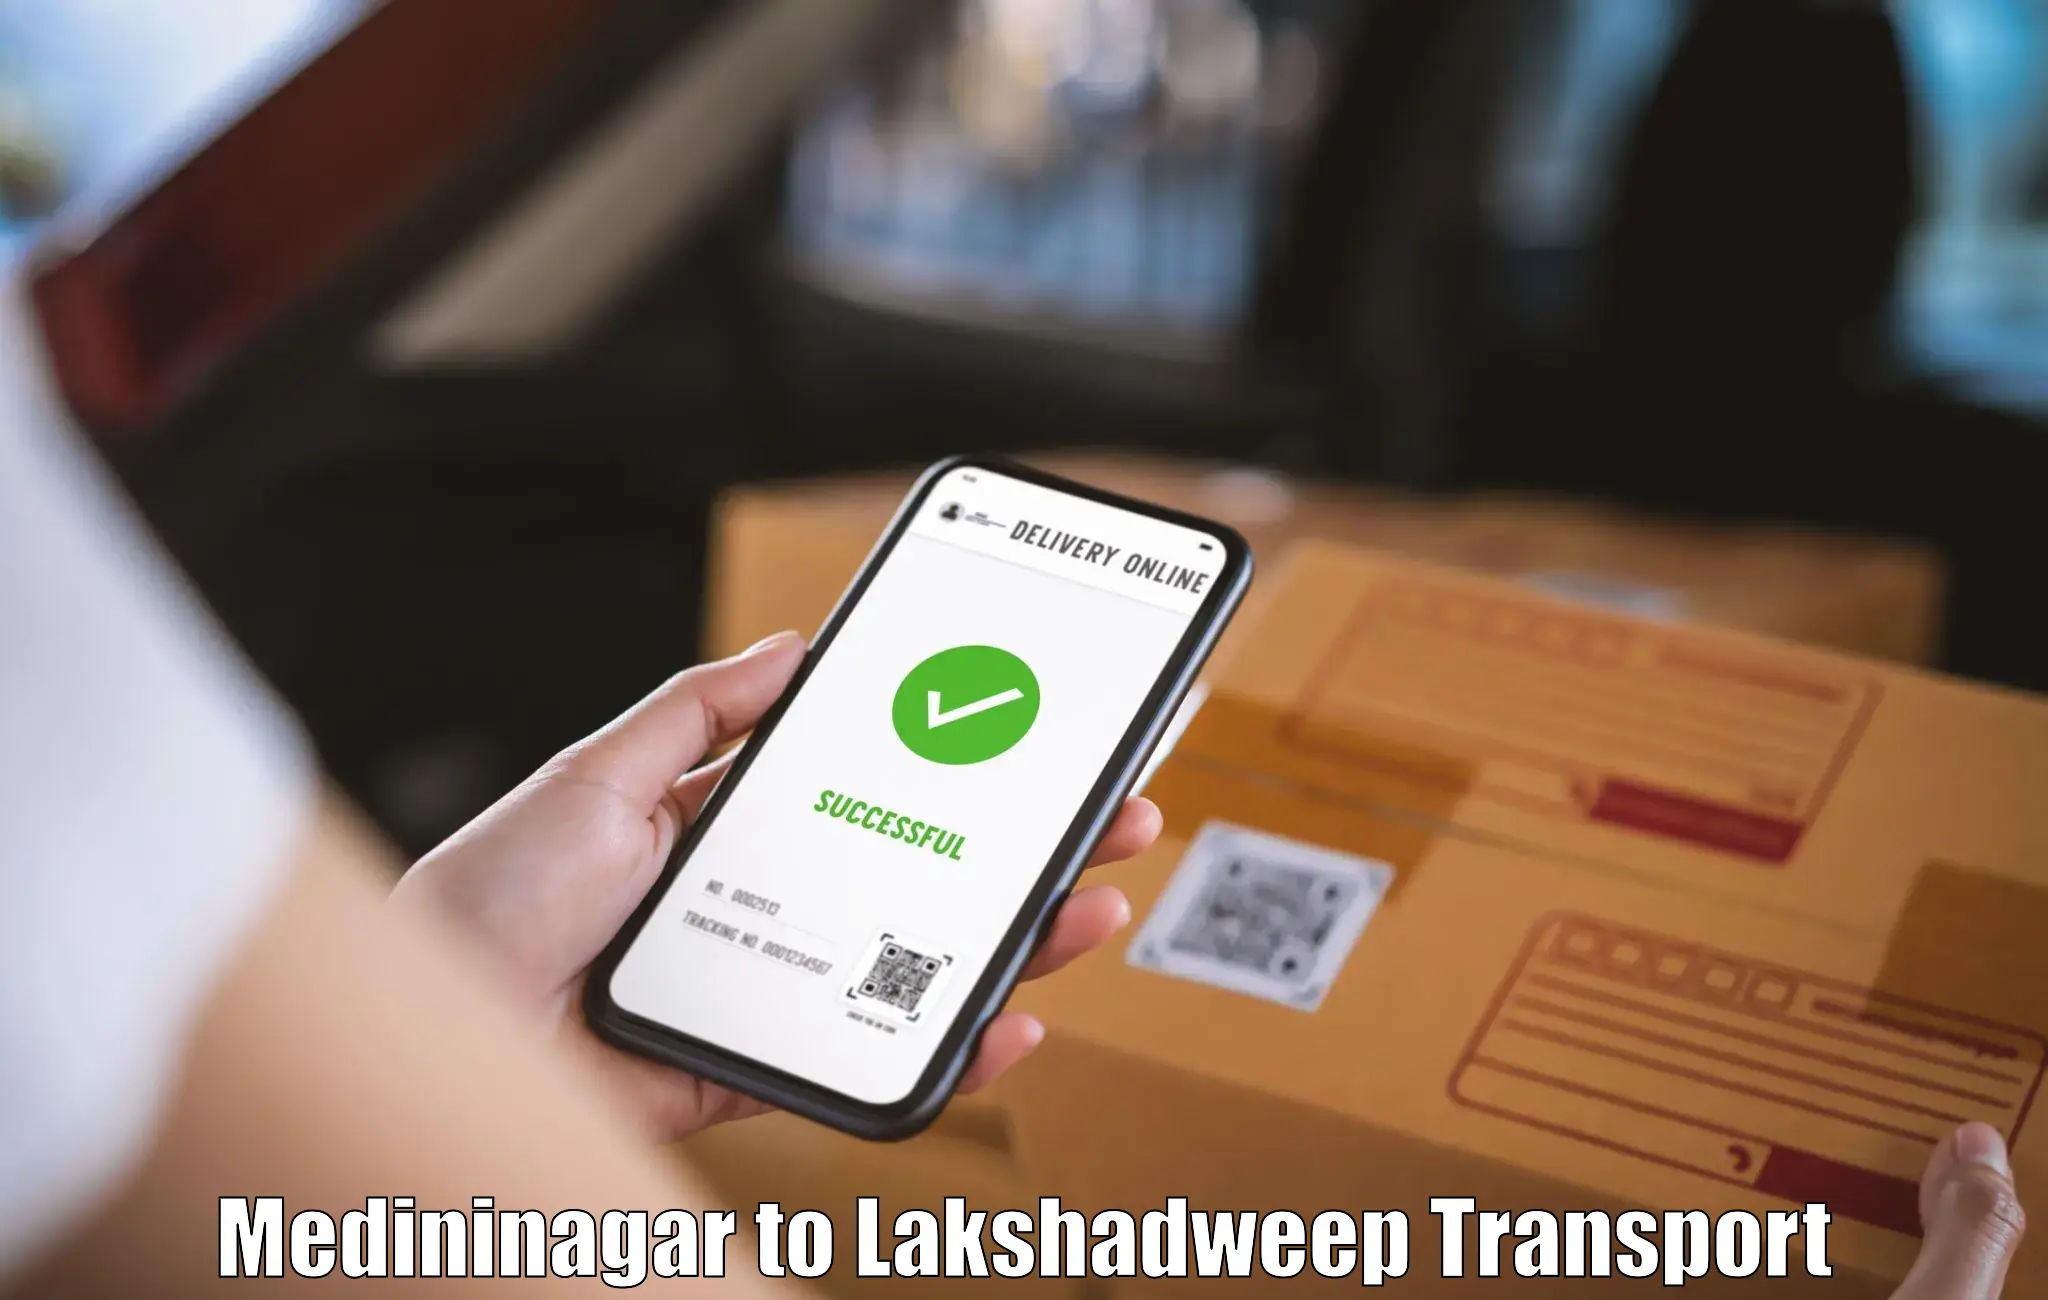 Cargo transport services Medininagar to Lakshadweep